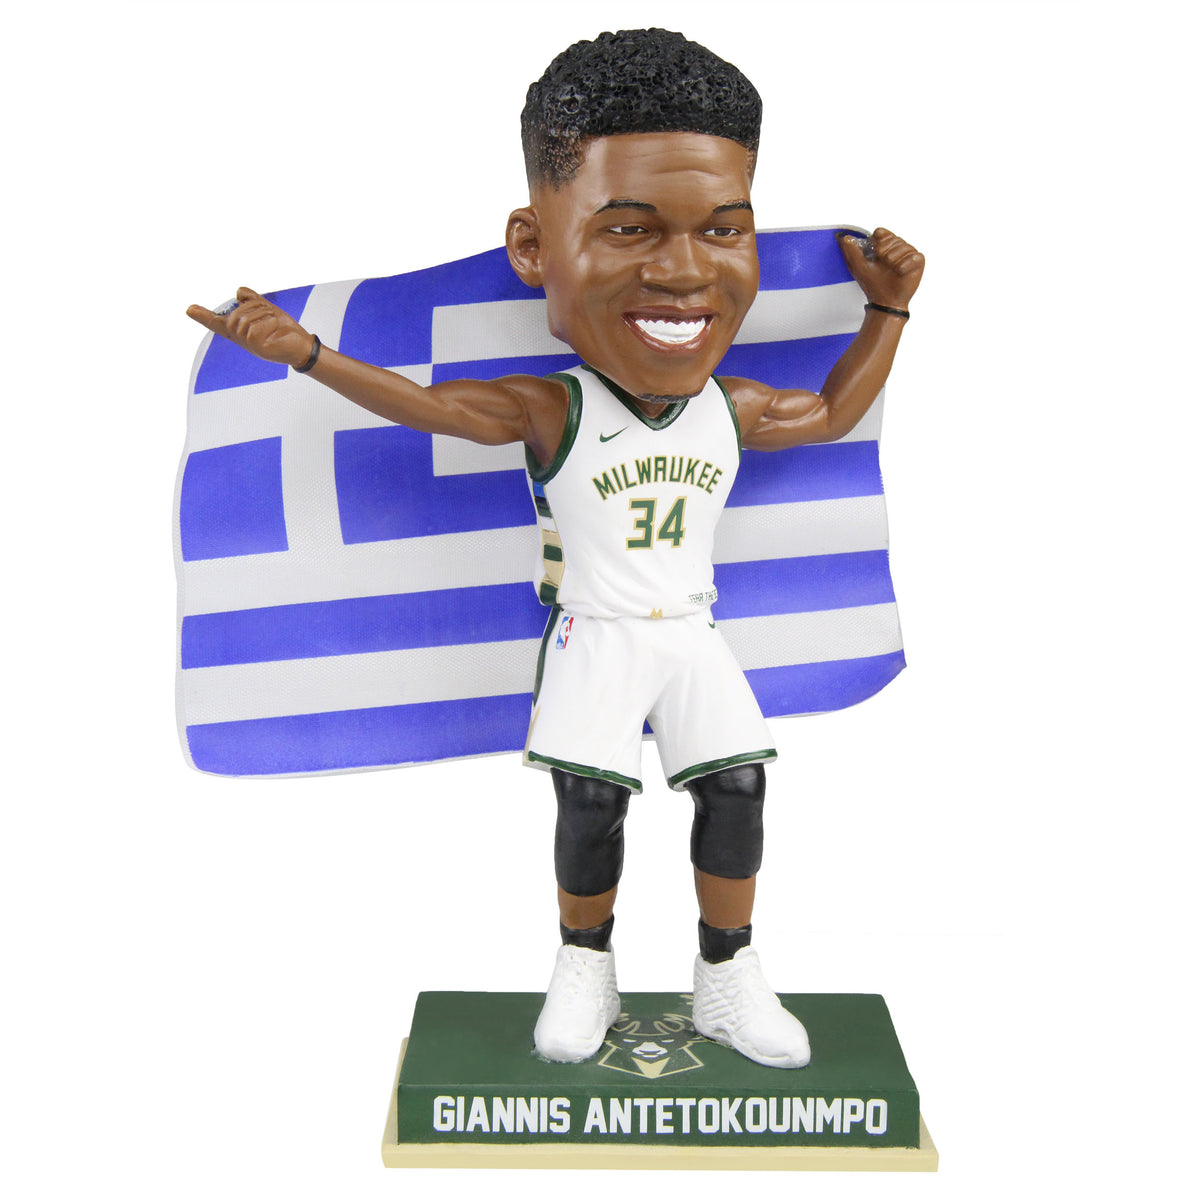 Giannis Antetokounmpo 34 Greece National Team White Basketball